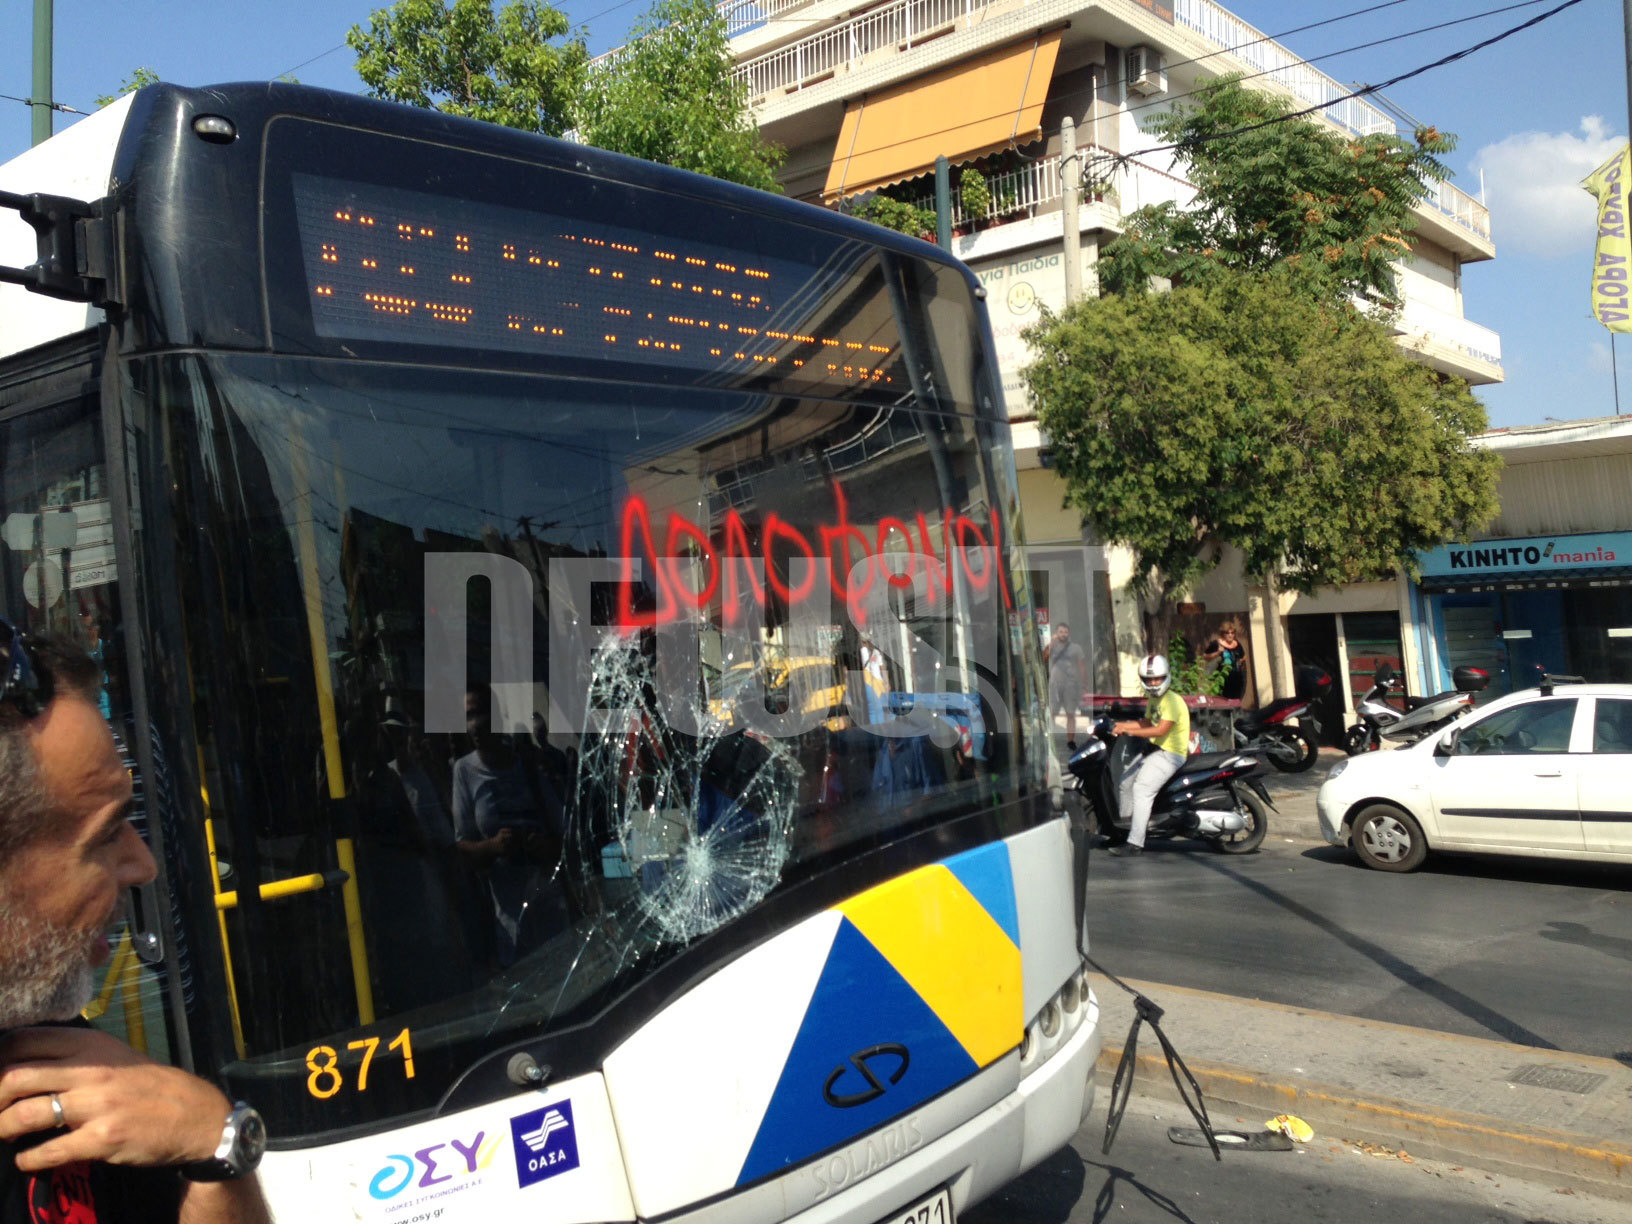 Πριν πάνε στην κηδεία, έσπασαν λεωφορείο γεμάτο επιβάτες στο Περιστέρι – ΦΩΤΟ και ΒΙΝΤΕΟ